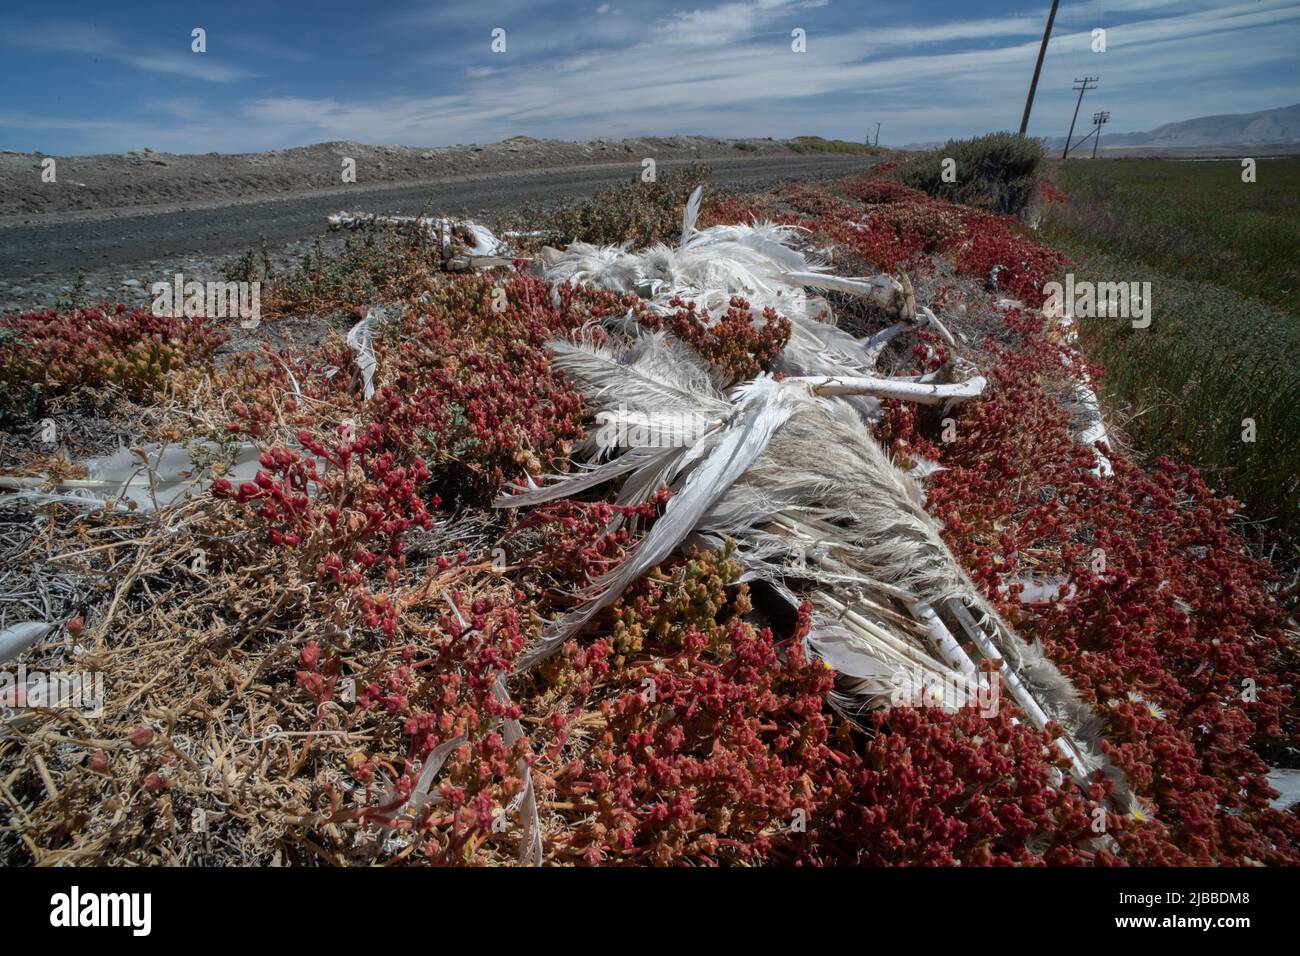 Los restos de un pelícano blanco americano (Pelecanus erythrorhynchos) que descansa en un icéo delgado (Mesembrianthemum nodiflorum) en el área de la bahía de CA. Foto de stock